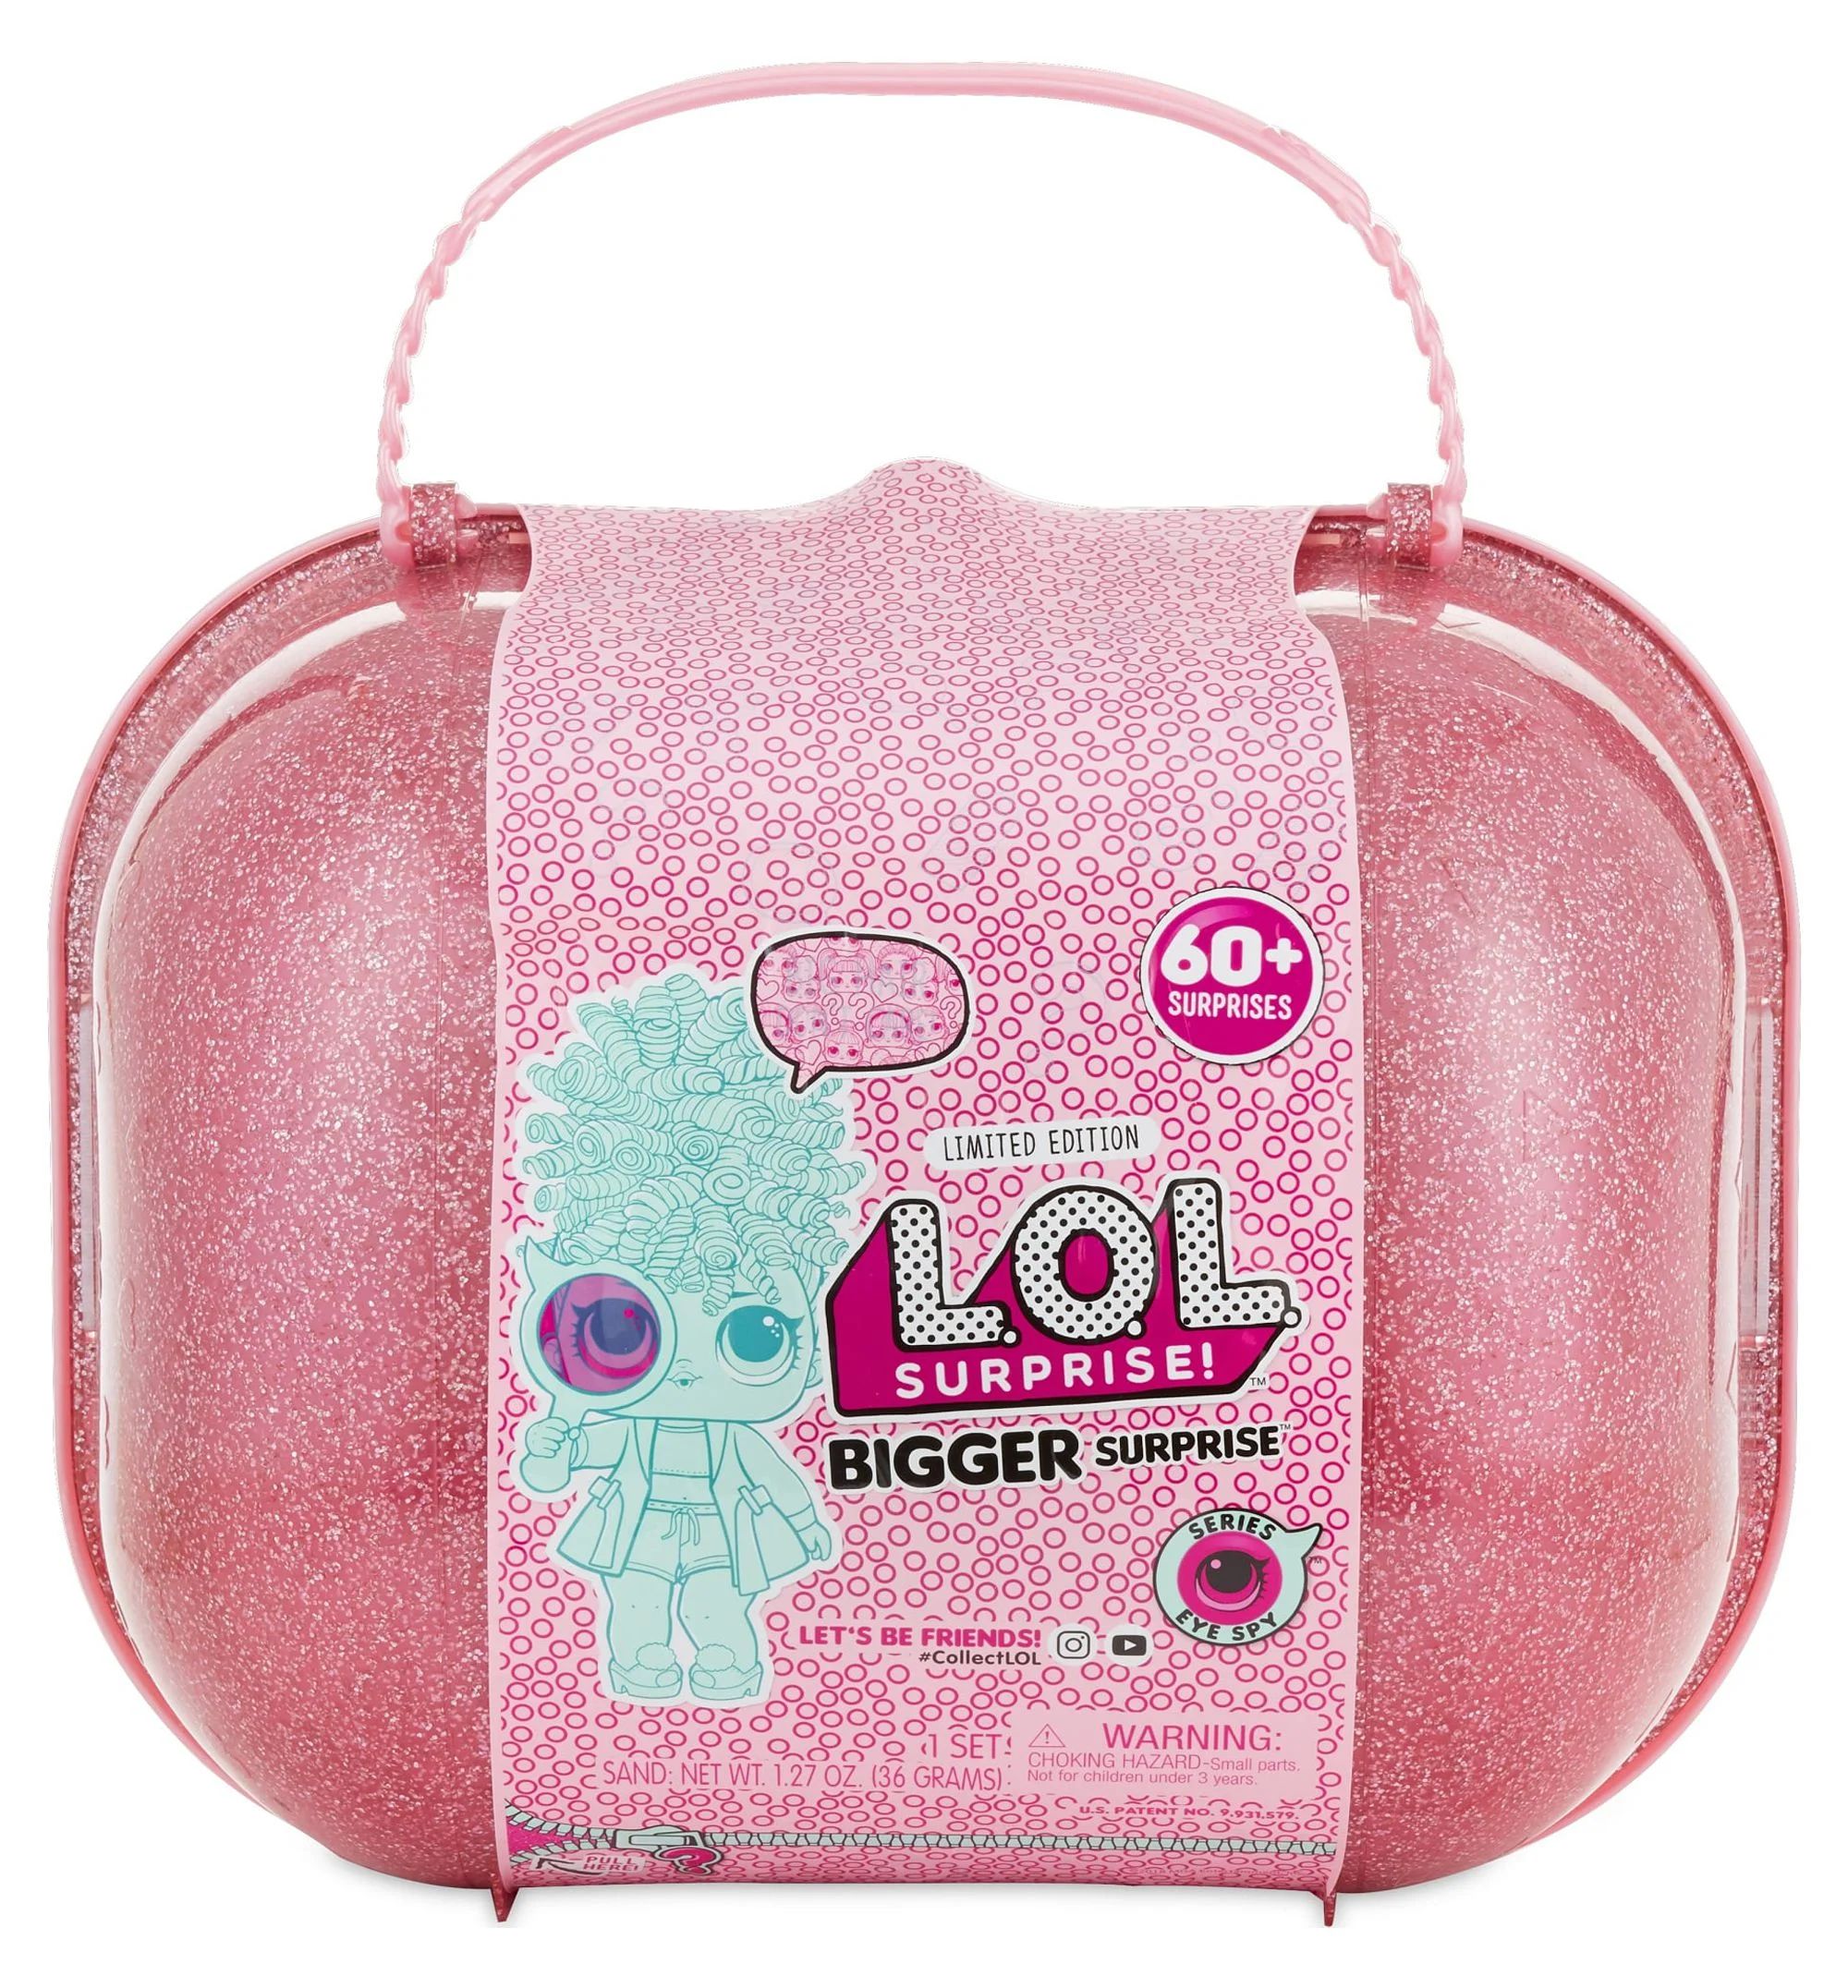 LOL Surprise Bigger Surprise Limited Edition 2 Dolls, 1 Pet, 1 Lil Sis with 60 Surprises, Ages 4 ... | Walmart (US)